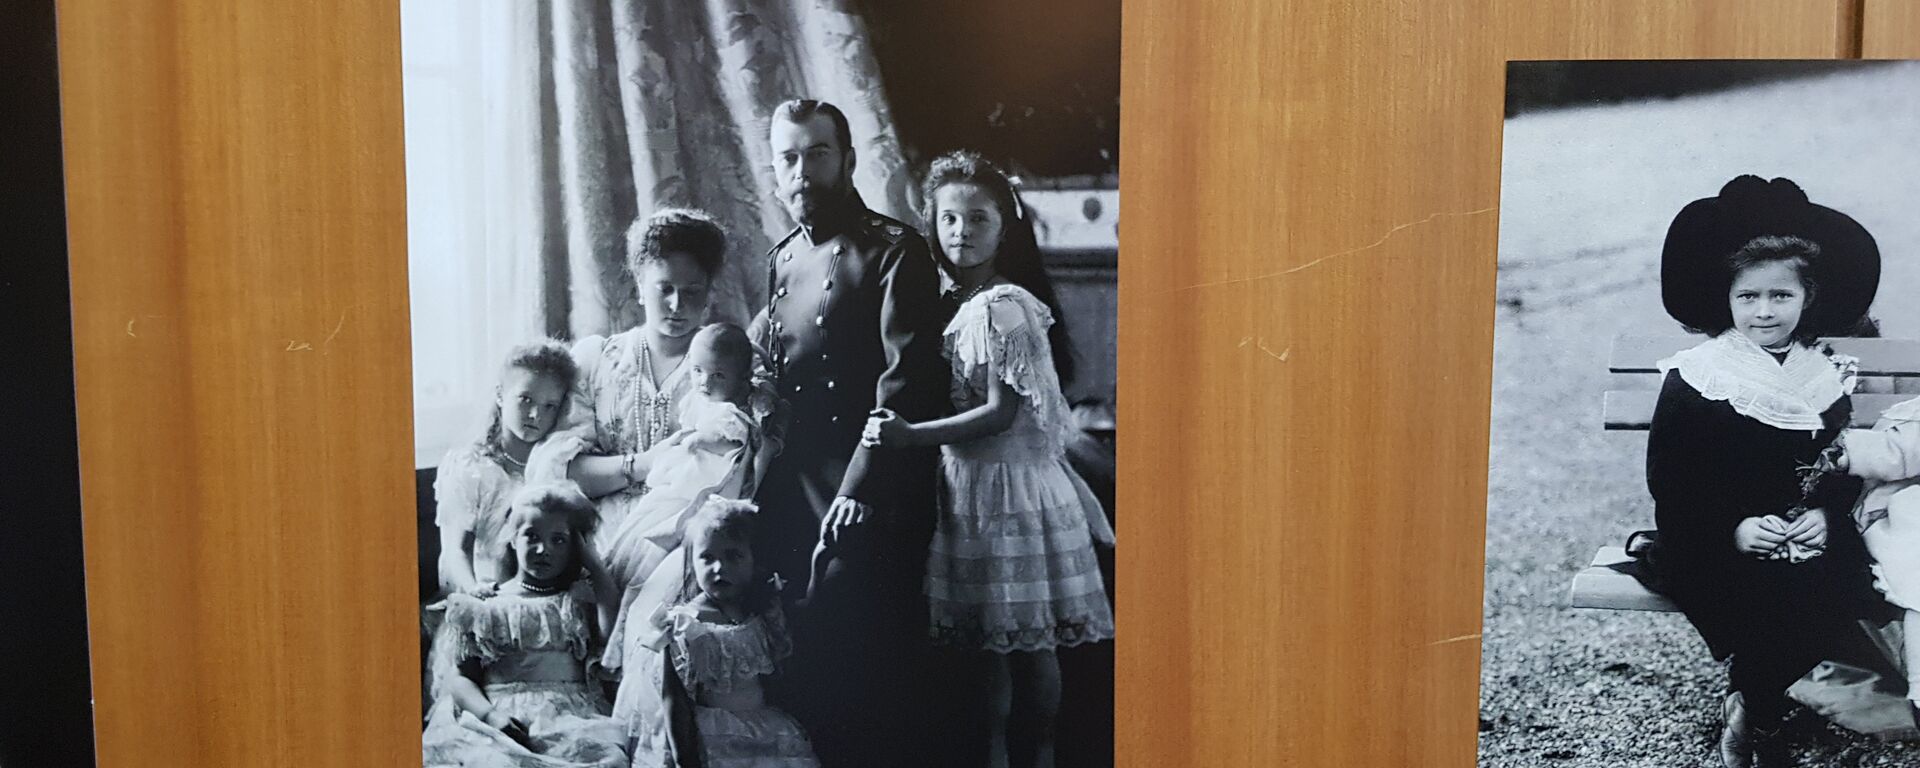 Kraljevska porodica Romanov - Sputnik Srbija, 1920, 08.05.2019